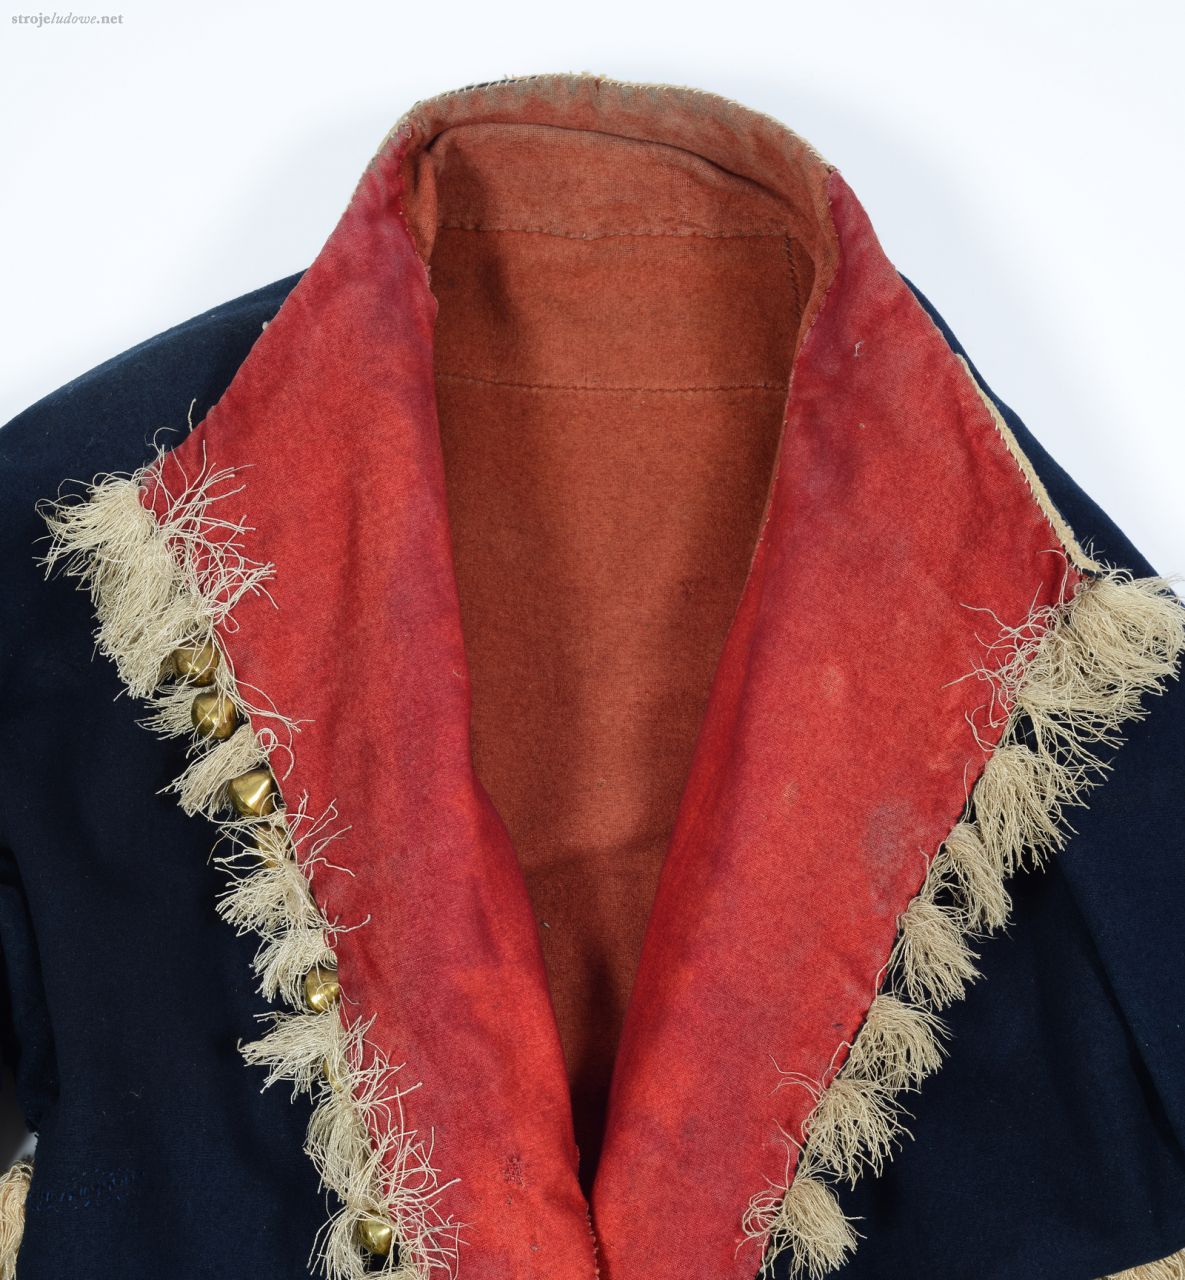 Przód żupana podszyty czerwonym suknem <em>kirem</em>, ozdobiony frędzlami i mosiężnymi <em>bucolam</em>i, łańcuckie, druga połowa XIX w., Ze zbiorów Muzeum Archeologicznego i Etnograficznego w Łodzi, fot. Wł. Pohorecki

W pasie żupan zapinany był na dwie lub trzy haftki, górna część była rozchylona z widocznymi czerwonymi wyłogami, które znajdowały się również u dołu rękawów. Wyłogi dla większej ozdoby miały doszyte frędzle, pomiędzy które wszywano mosiężne lub cynowe <em>bącole</em> tzn. guzy.